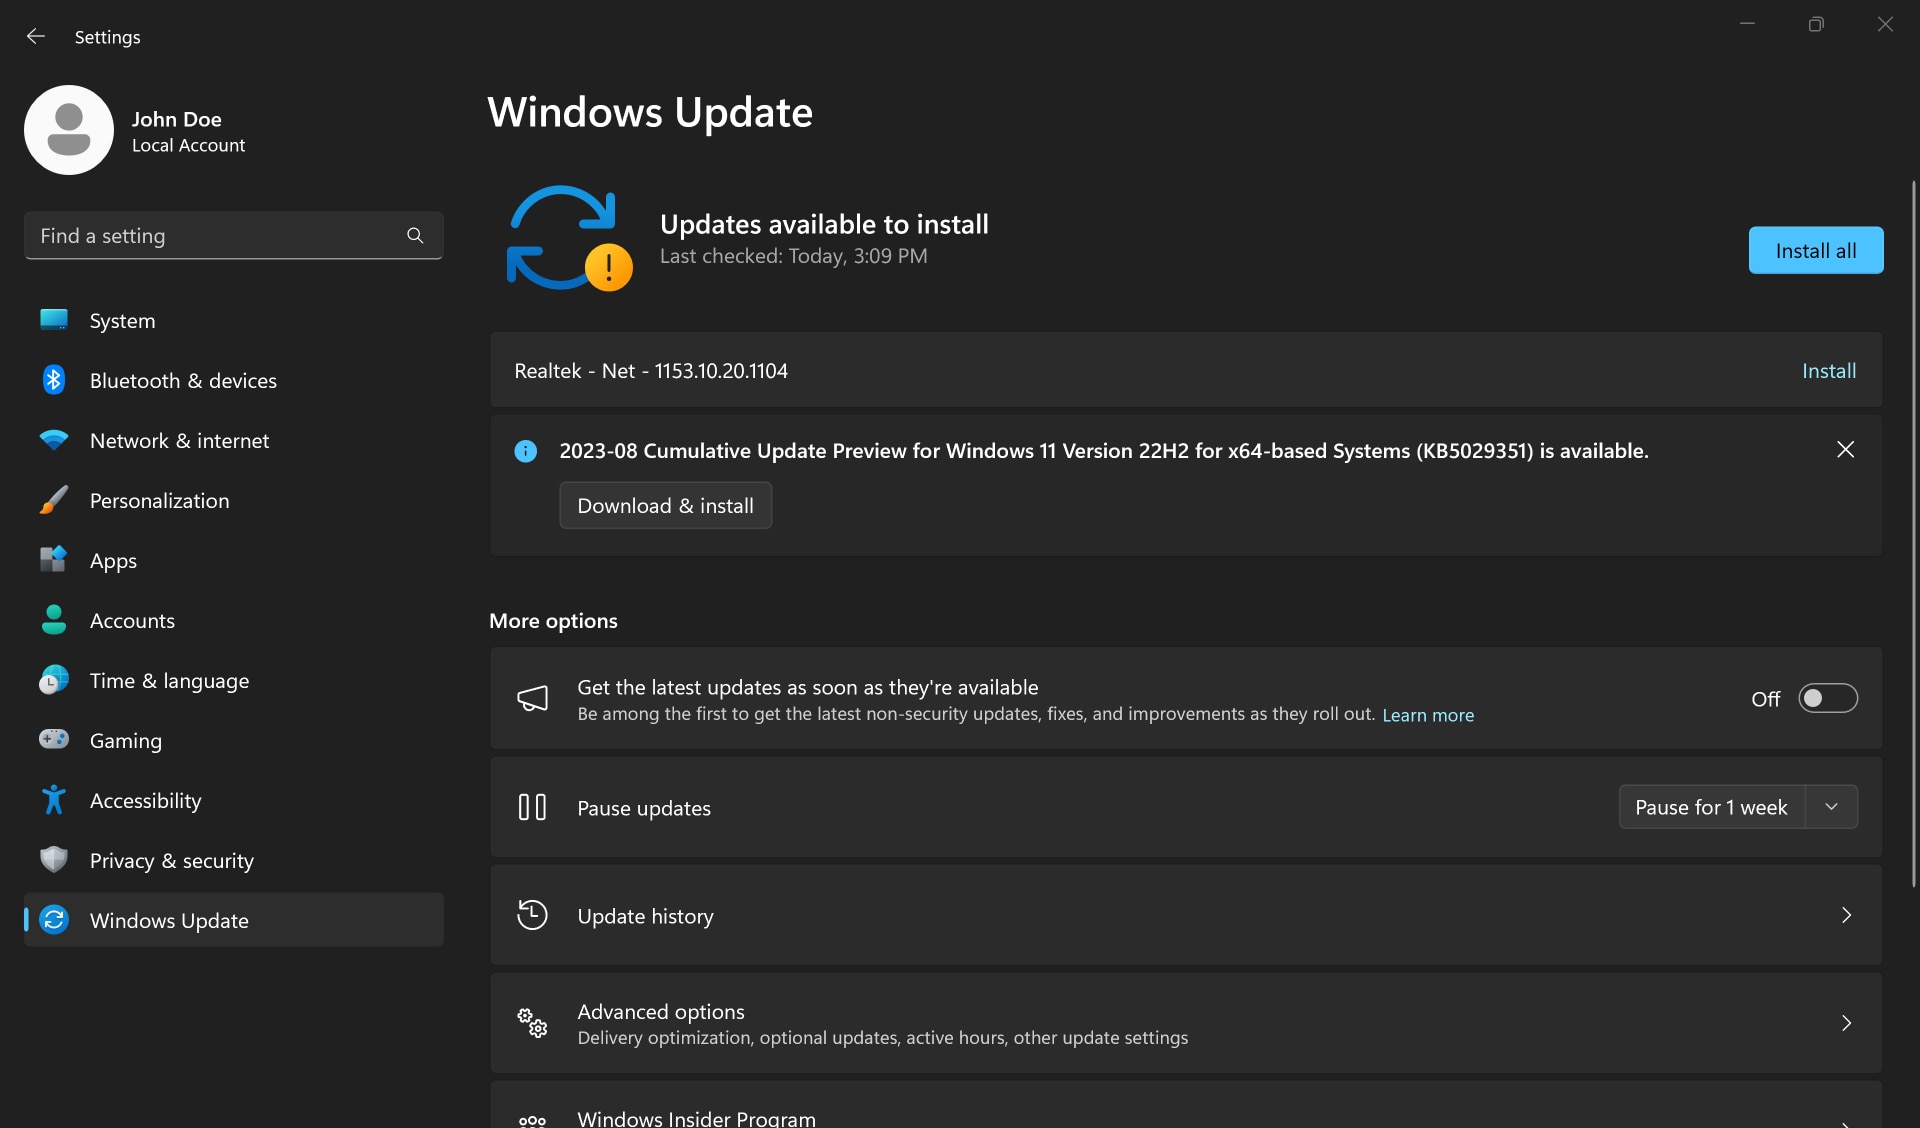 Asenna kaikki-painike Windows Updaten asetussovelluksessa